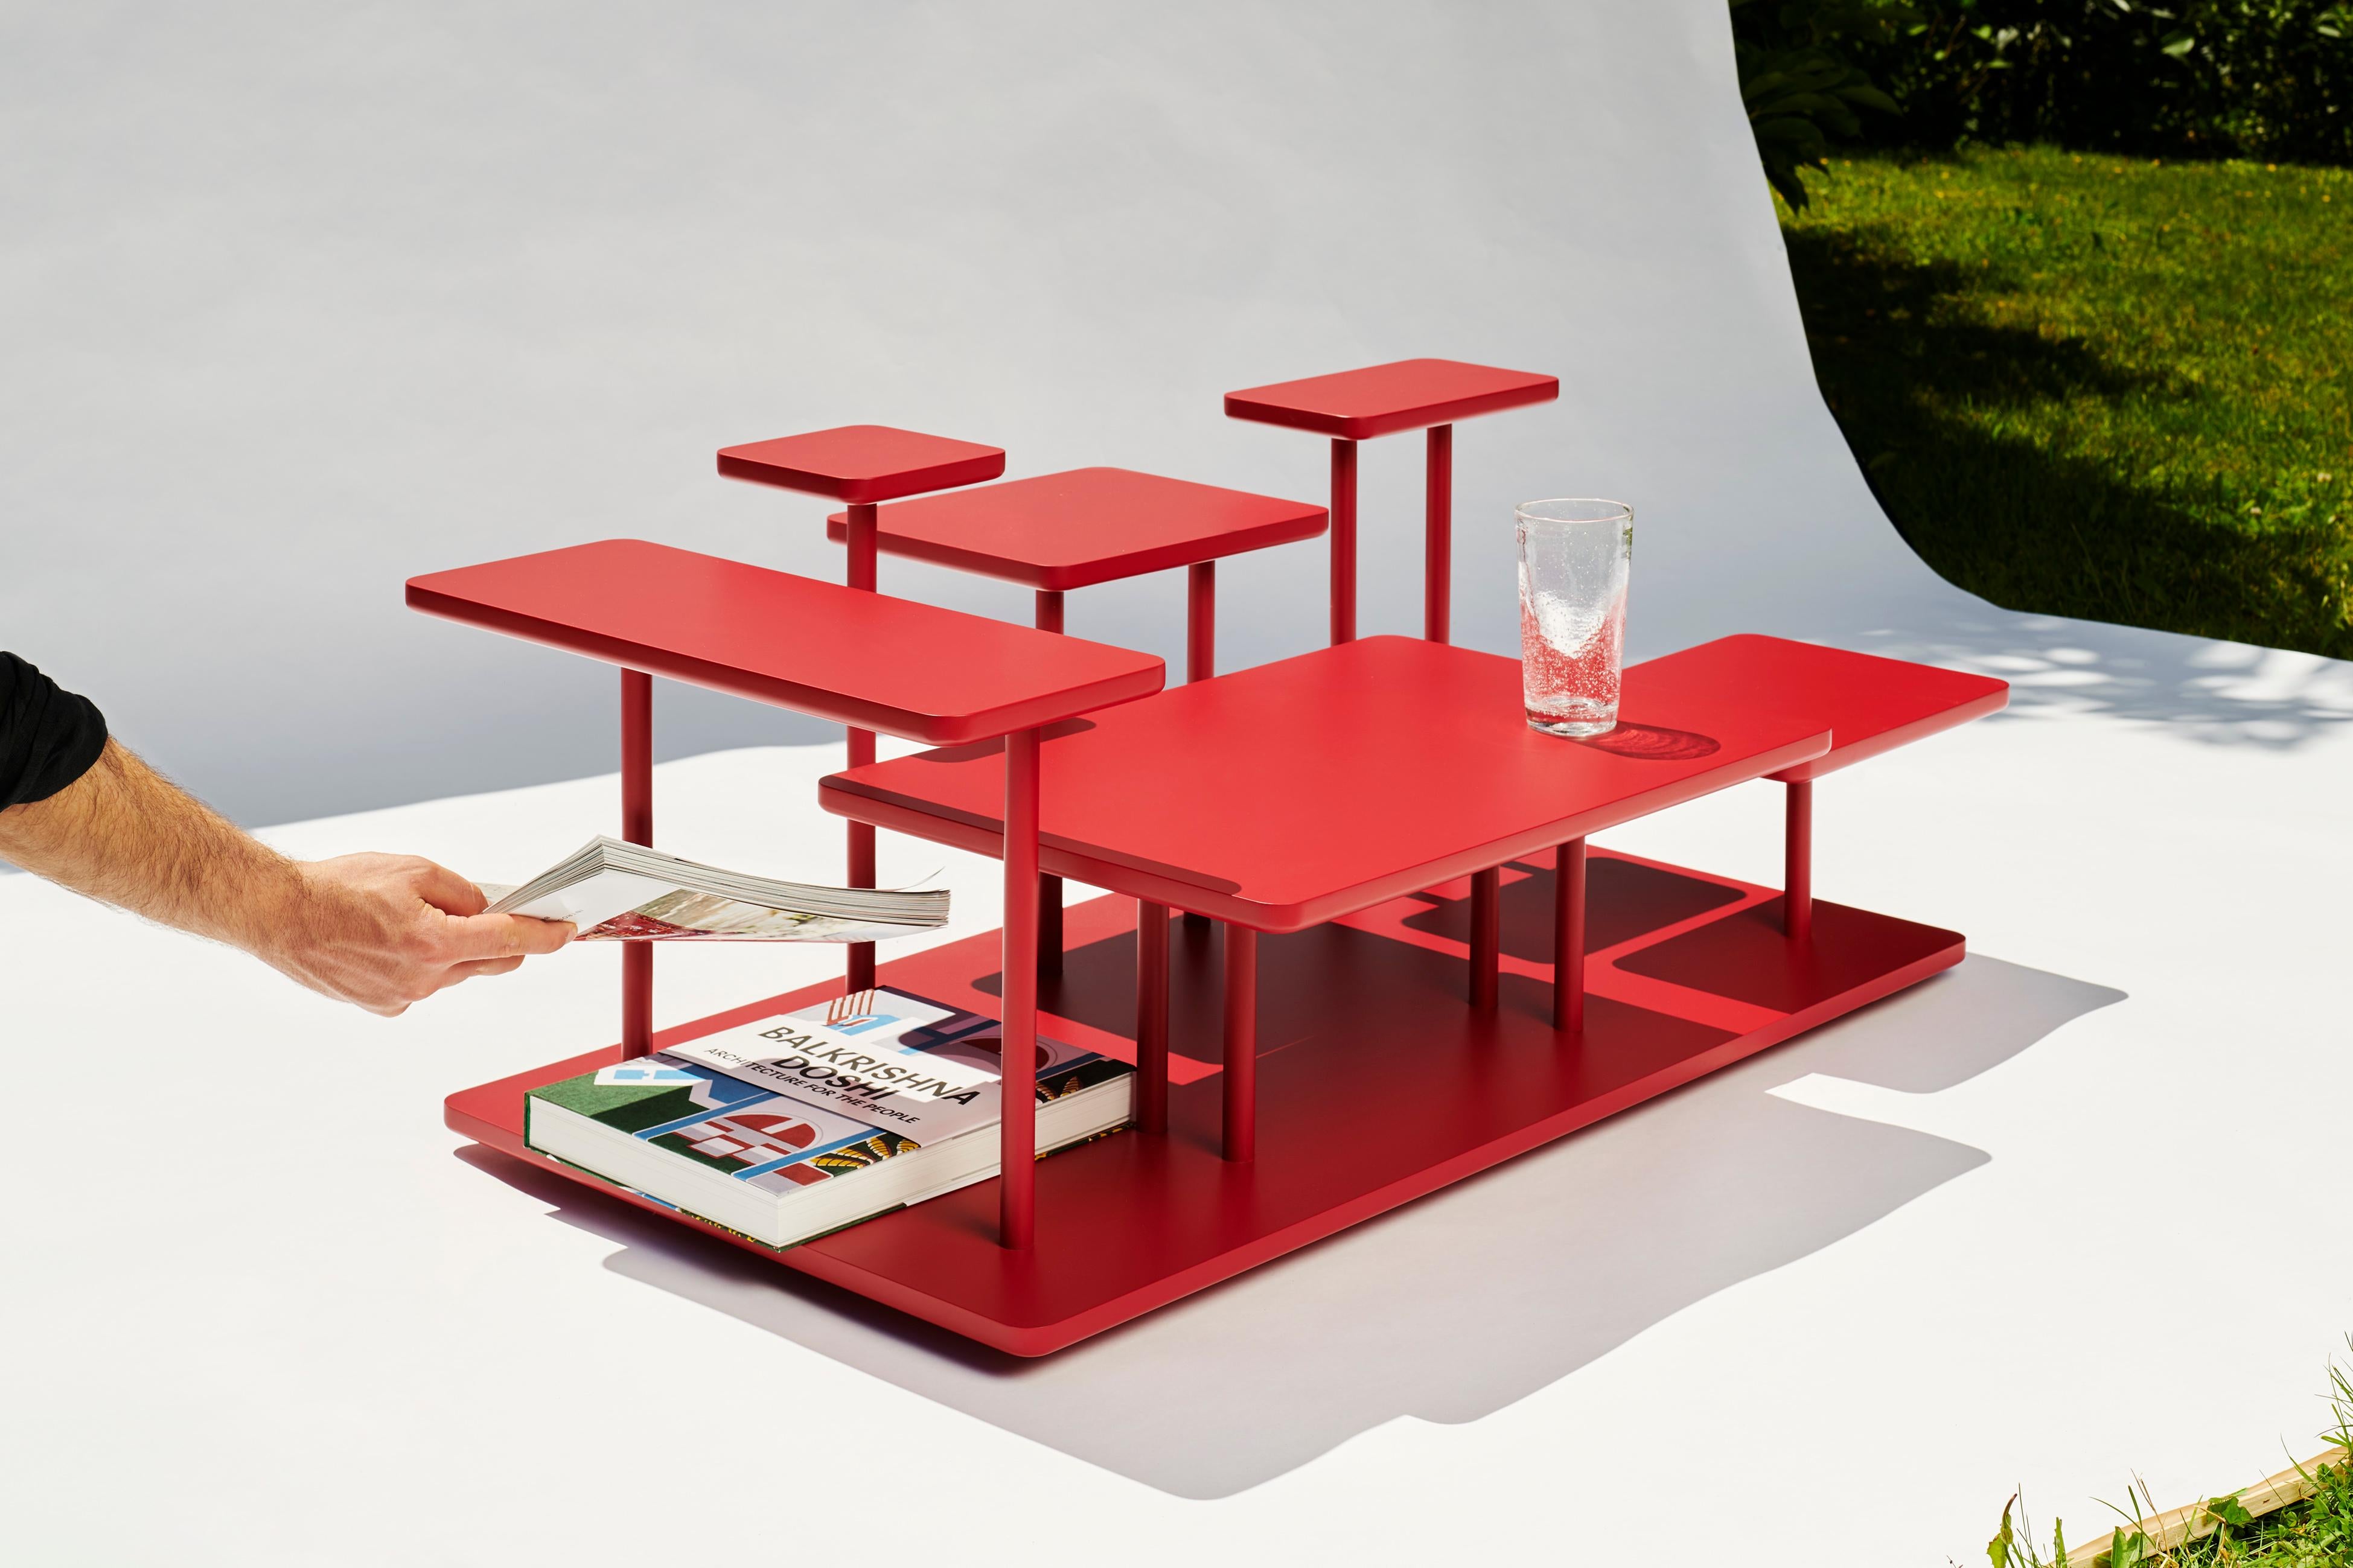 Eleg est une table basse élégante qui défie les formes conventionnelles et crée un collage fluide et sculptural des objets que vous décidez d'y exposer. Il se compose de six surfaces distinctes de tailles différentes, montées à diverses hauteurs sur